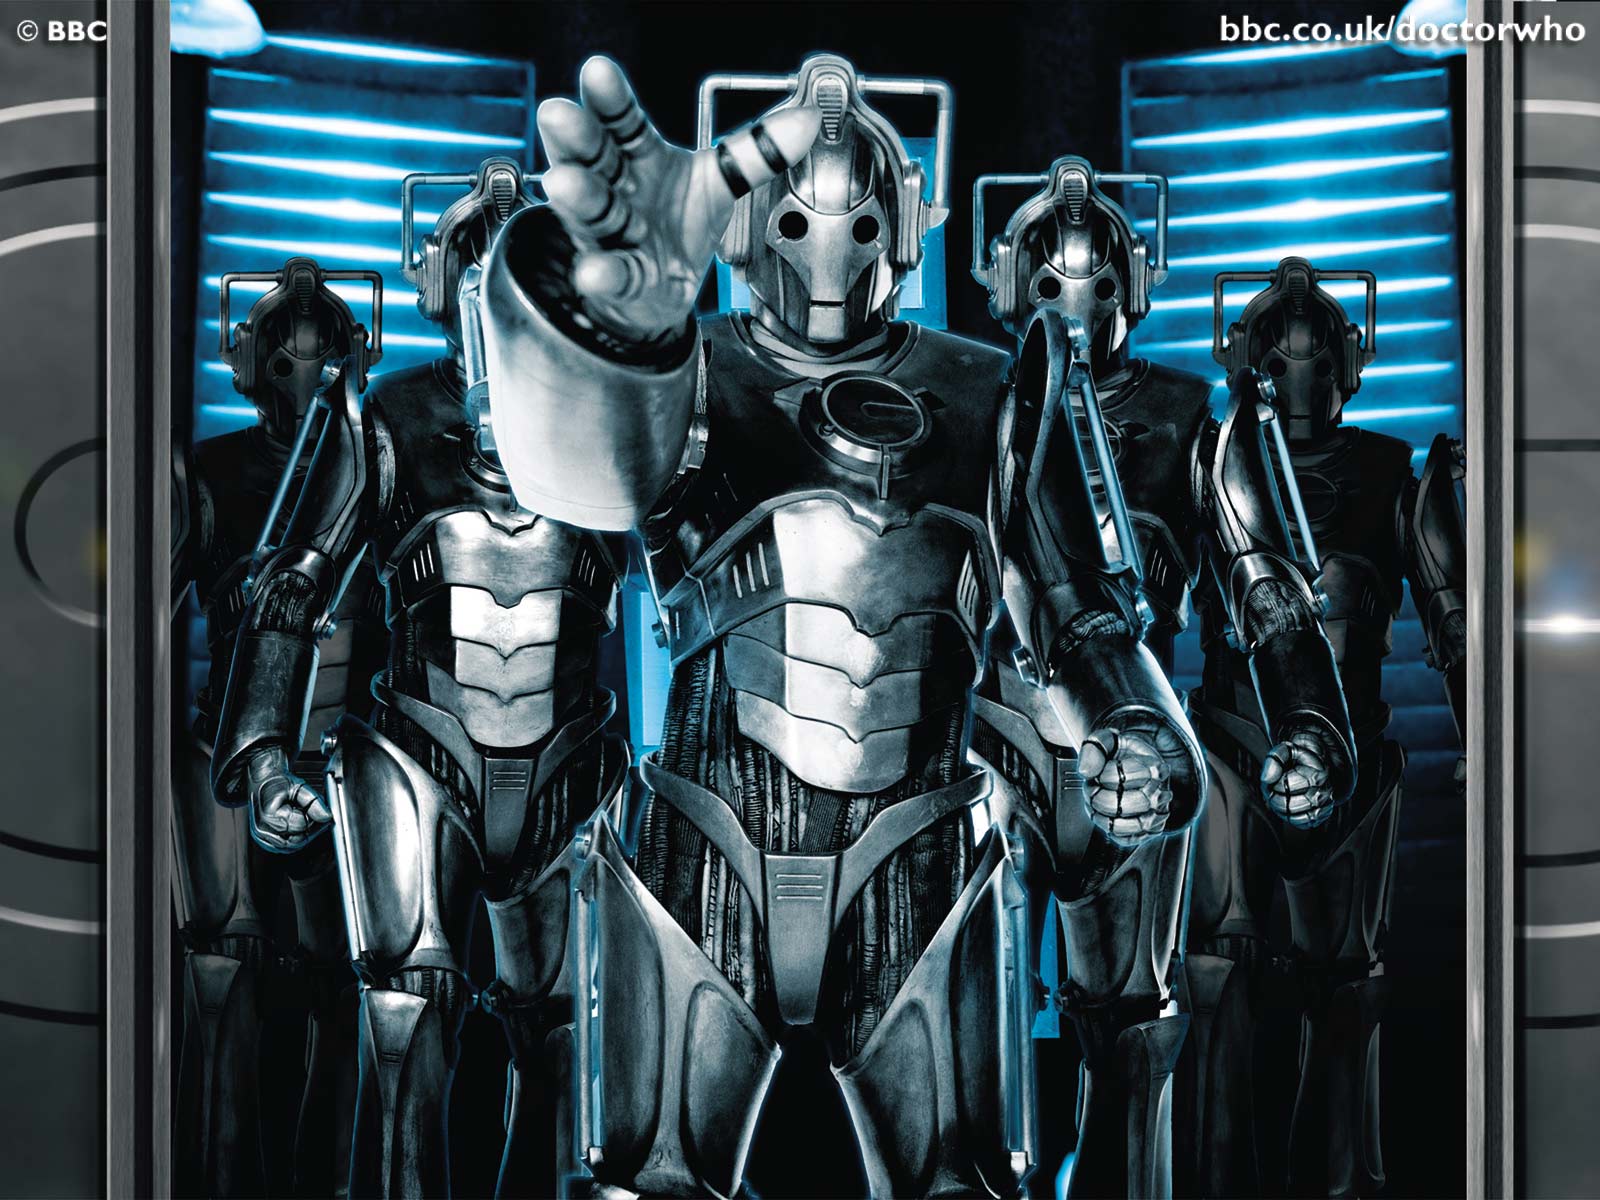 Melhores papéis de parede de Cyberman (Doctor Who) para tela do telefone